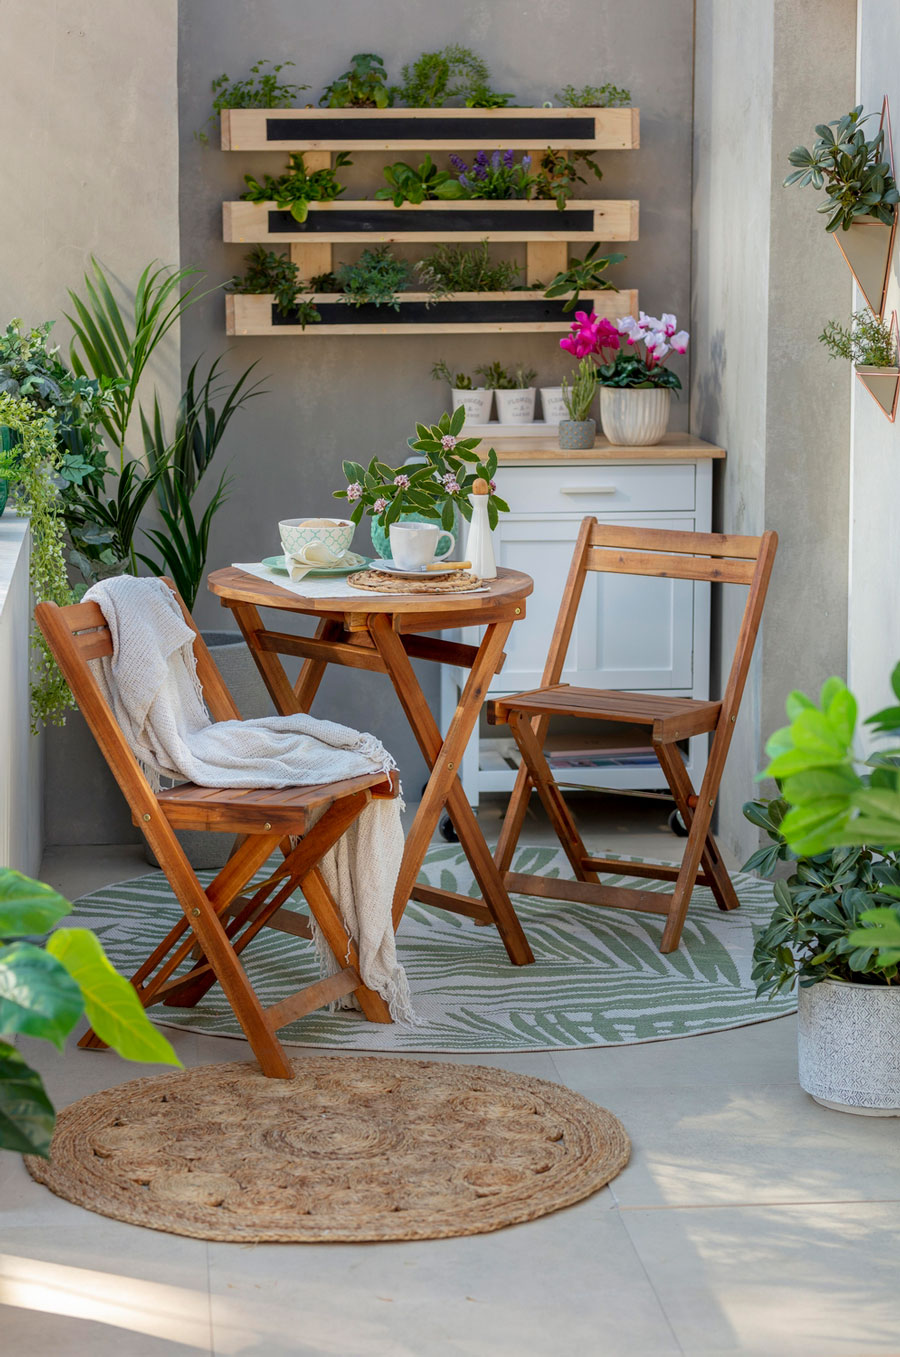 Un espacio al aire libre con muebles de terraza de madera: una mesa y 2 sillas. Es una idea para hacer un home office exterior.